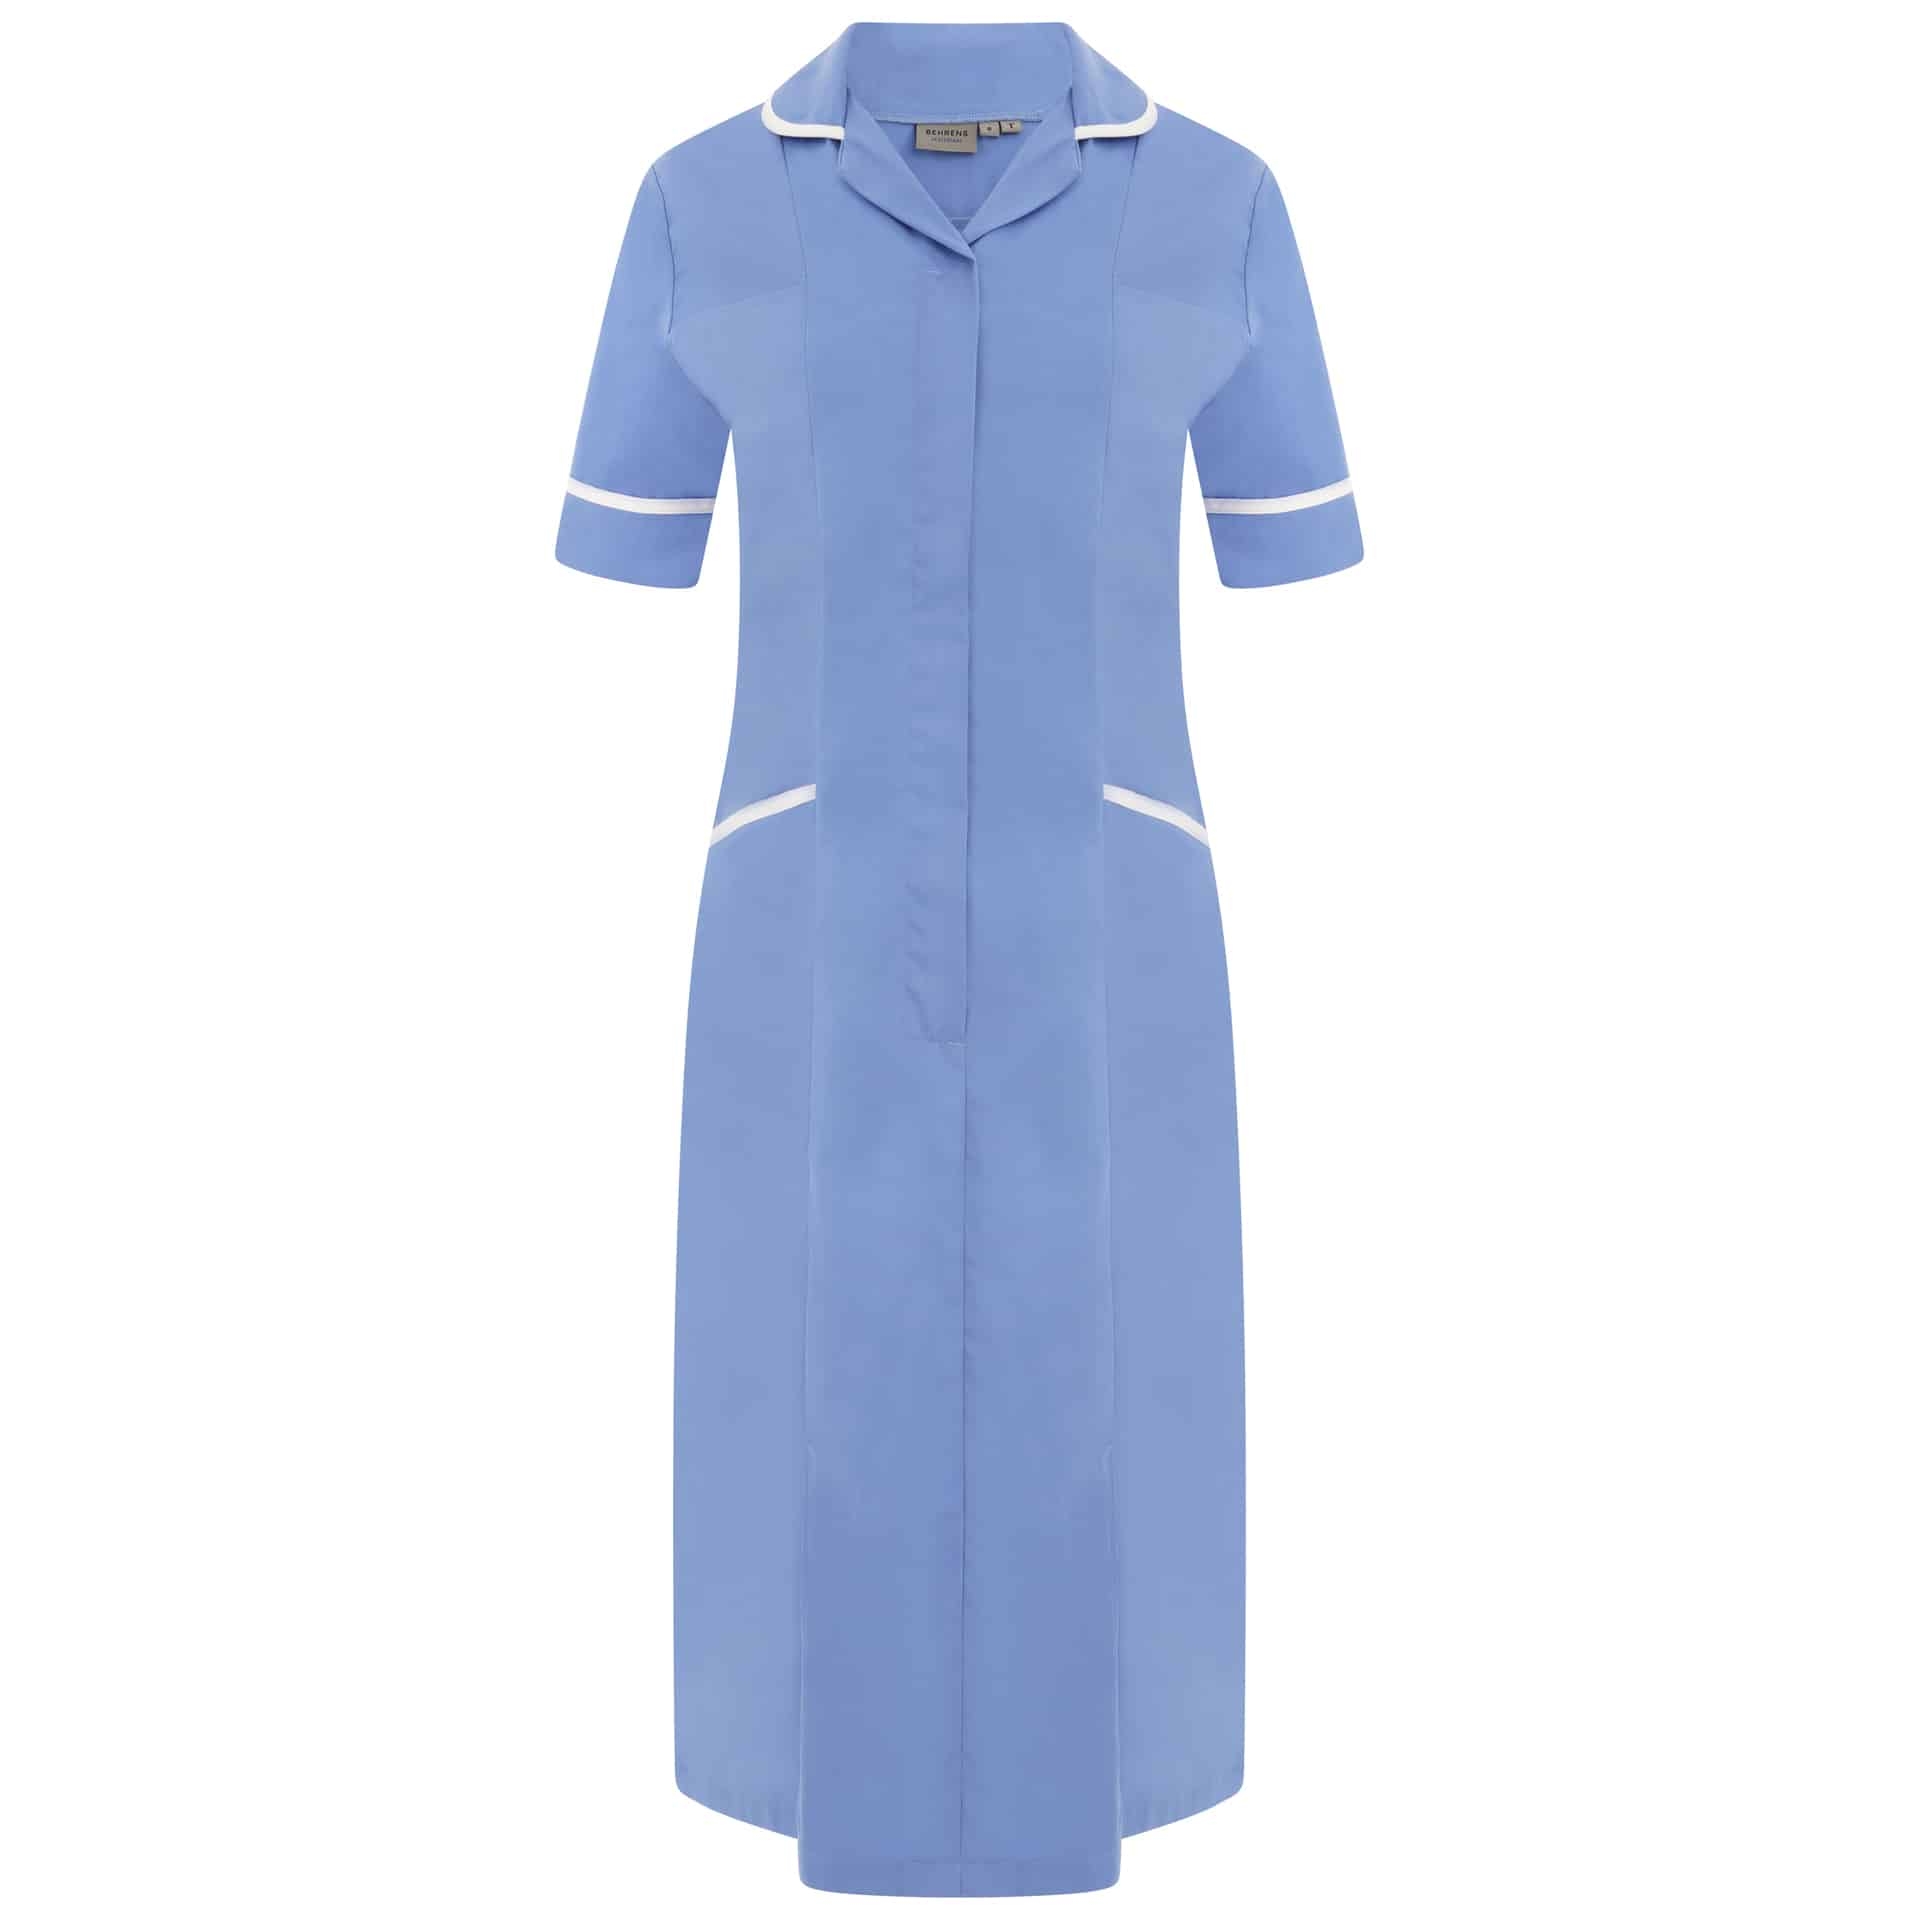 Behrens Ladies Dress – Hospital Blue/White Trim – 8 Reg – Uniforms Online